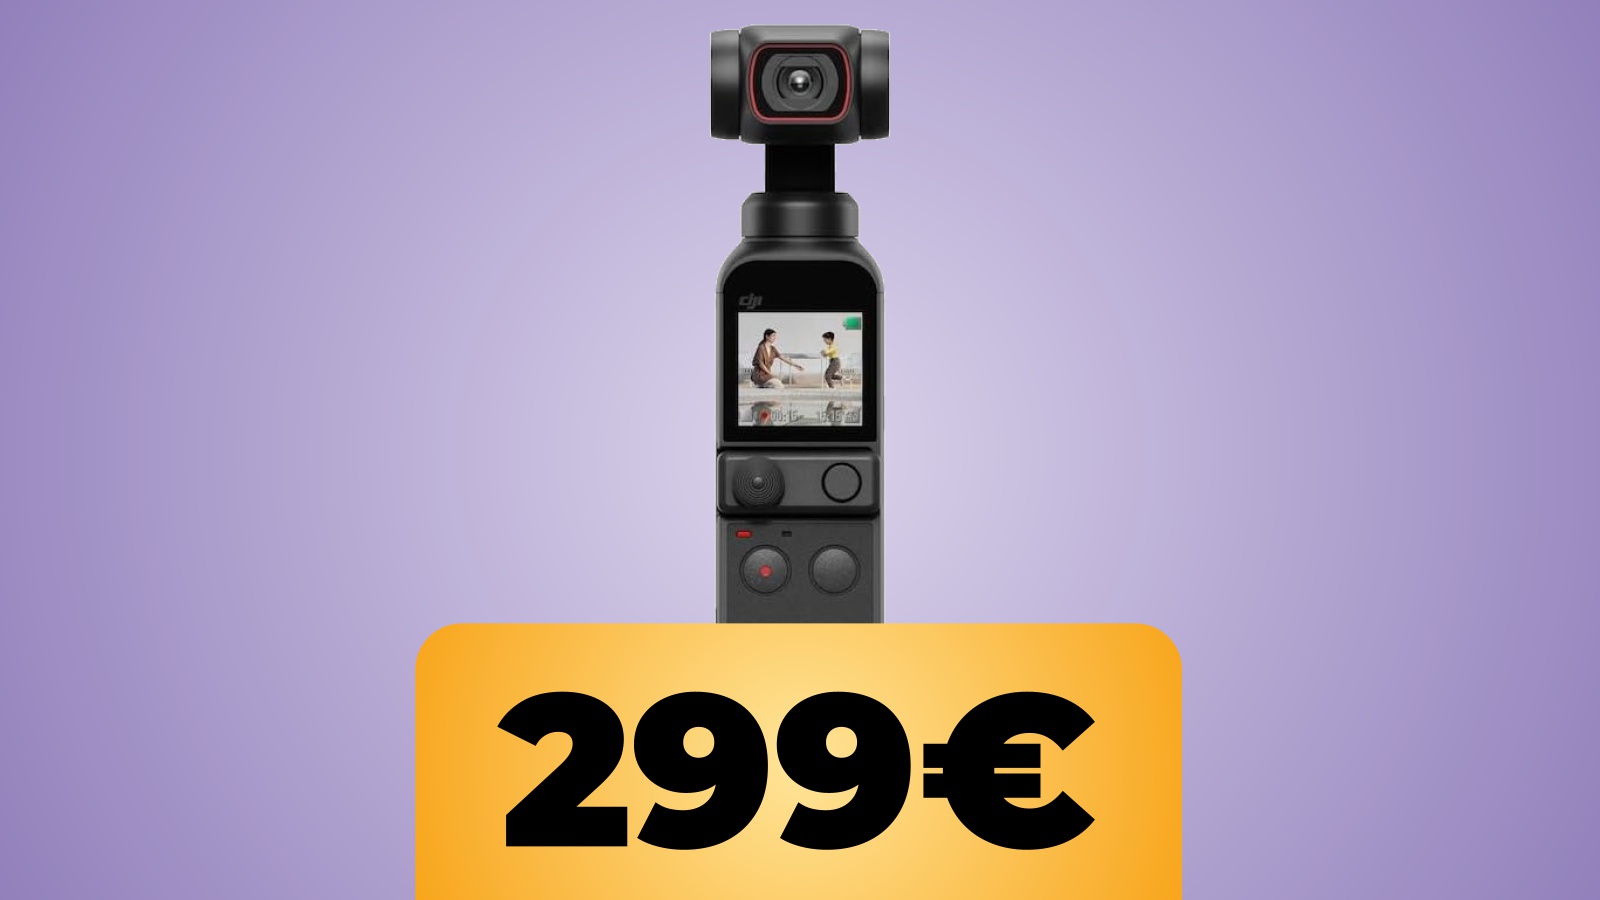 La fotocamera stabilizzata DJI Pocket 2 è in sconto su Amazon Italia